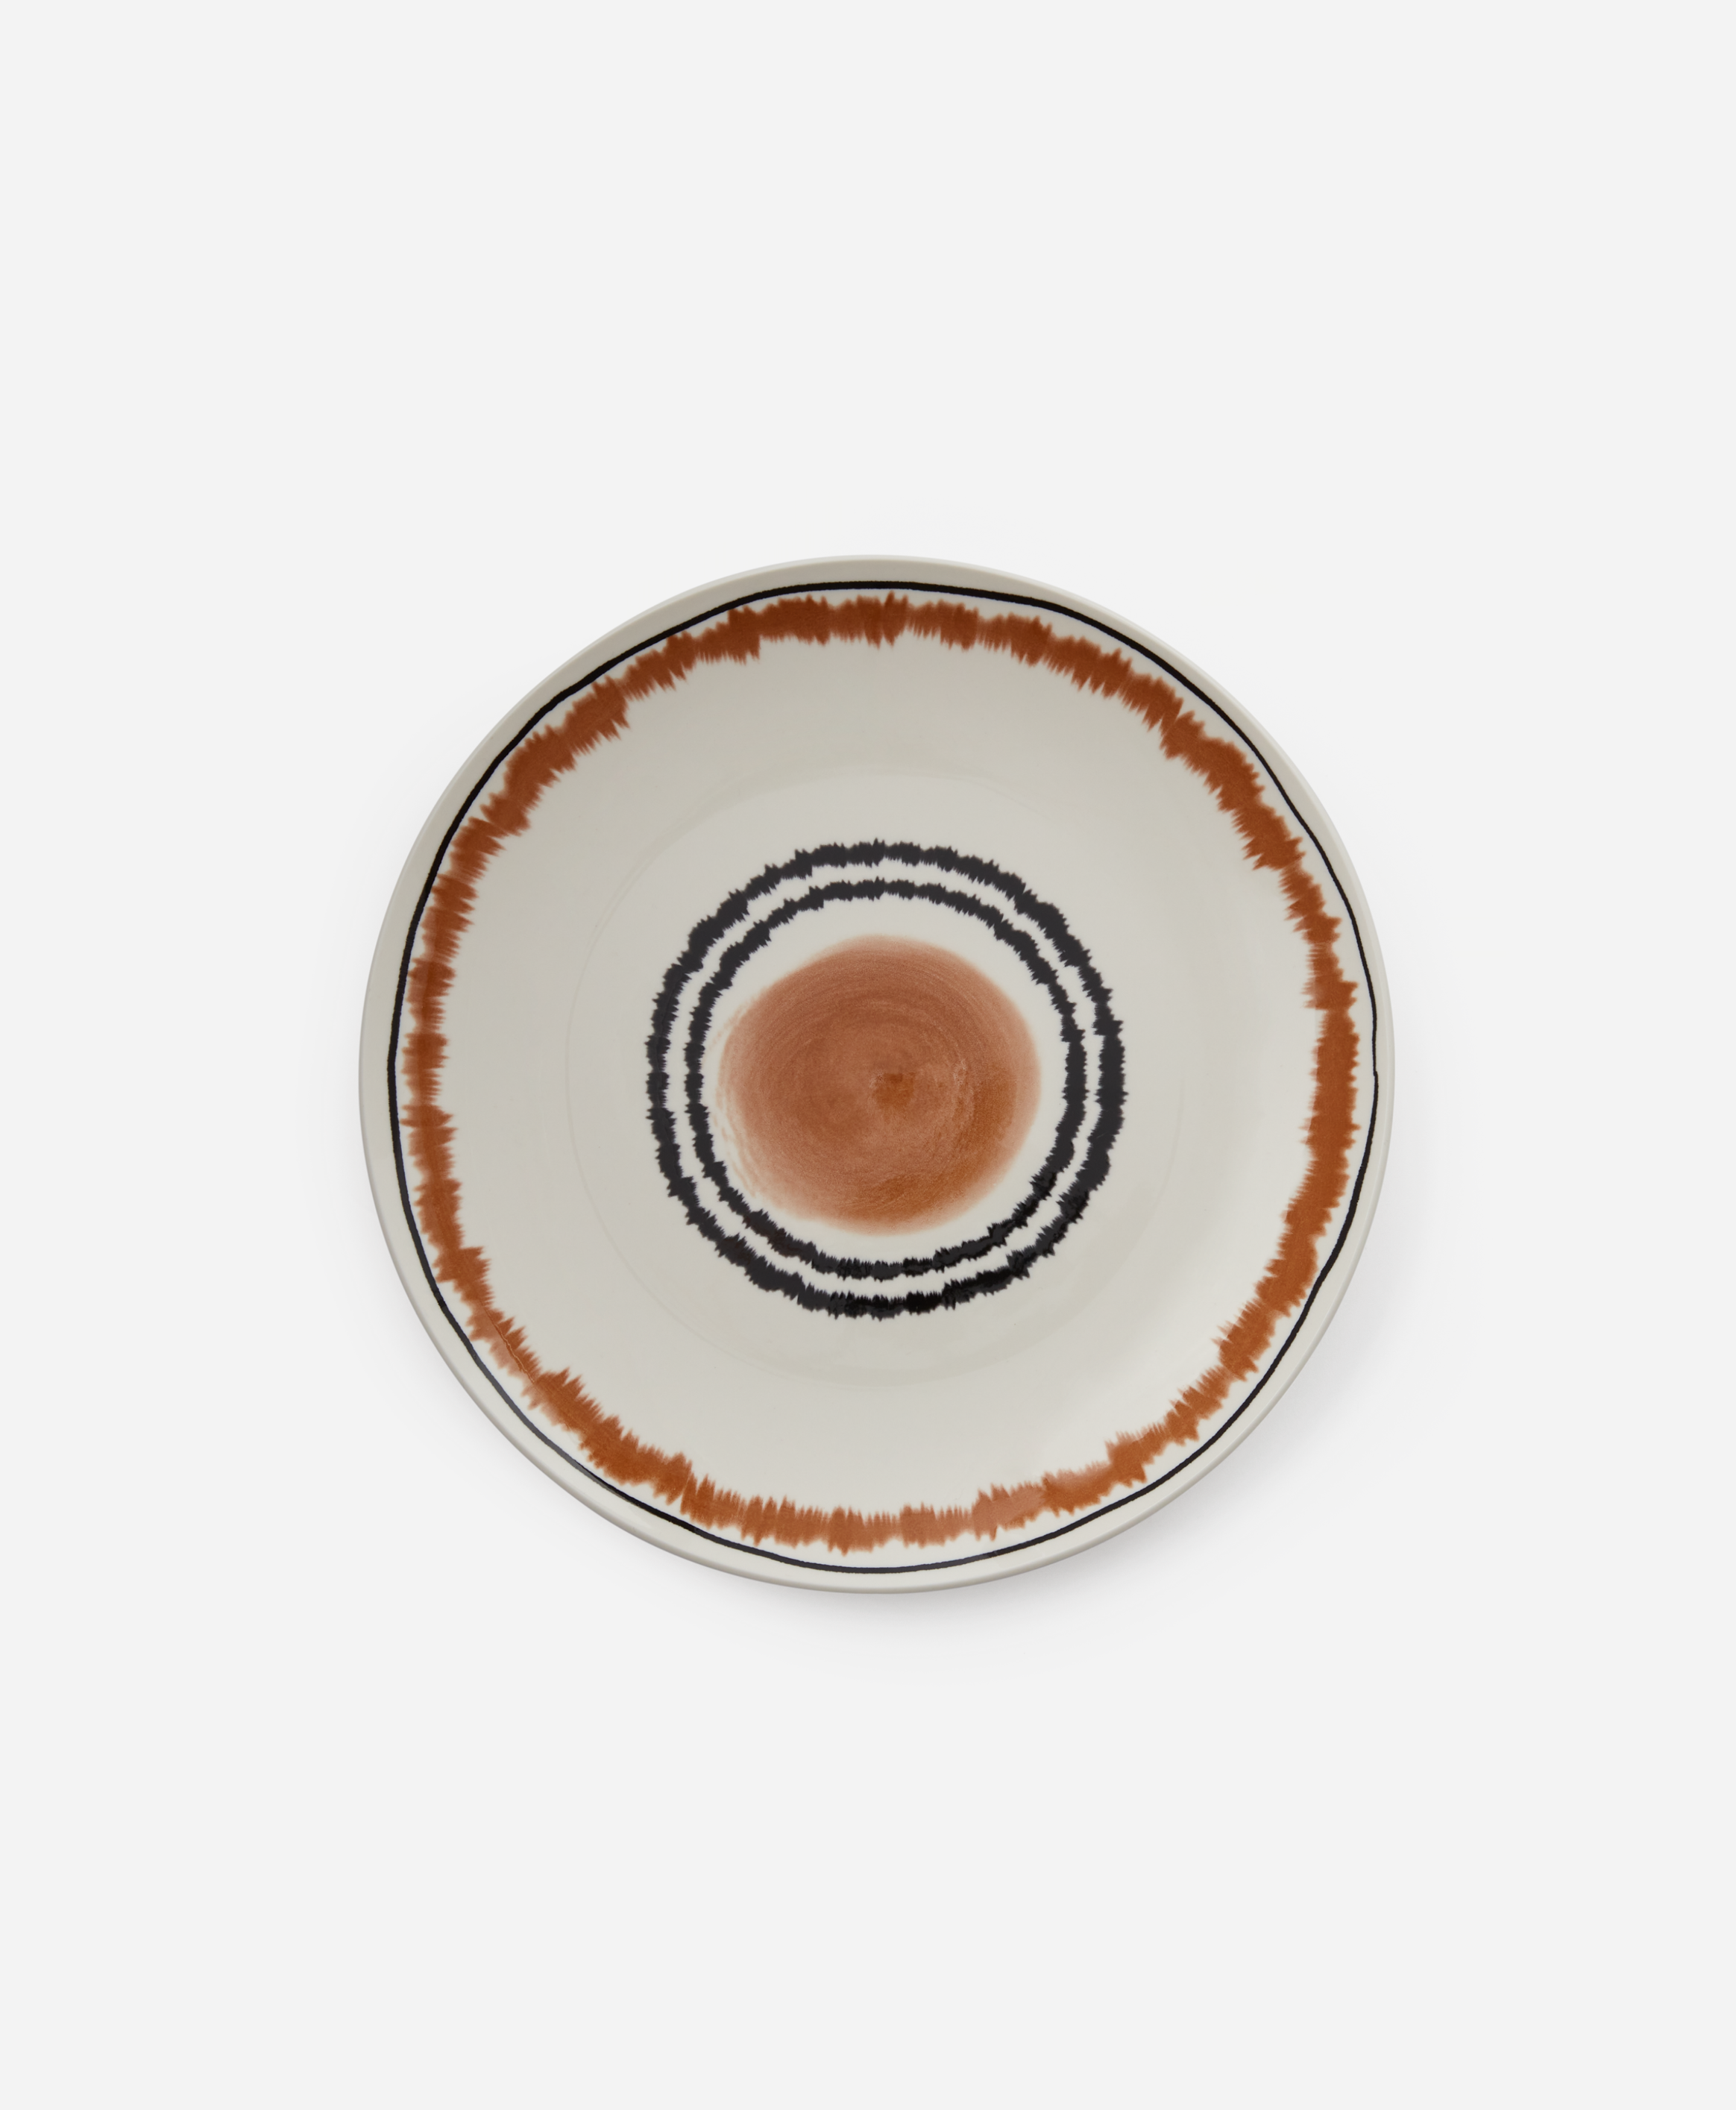 Keramik-Dessertteller mit Muster, weiß, braun, Ø 18,7 cm